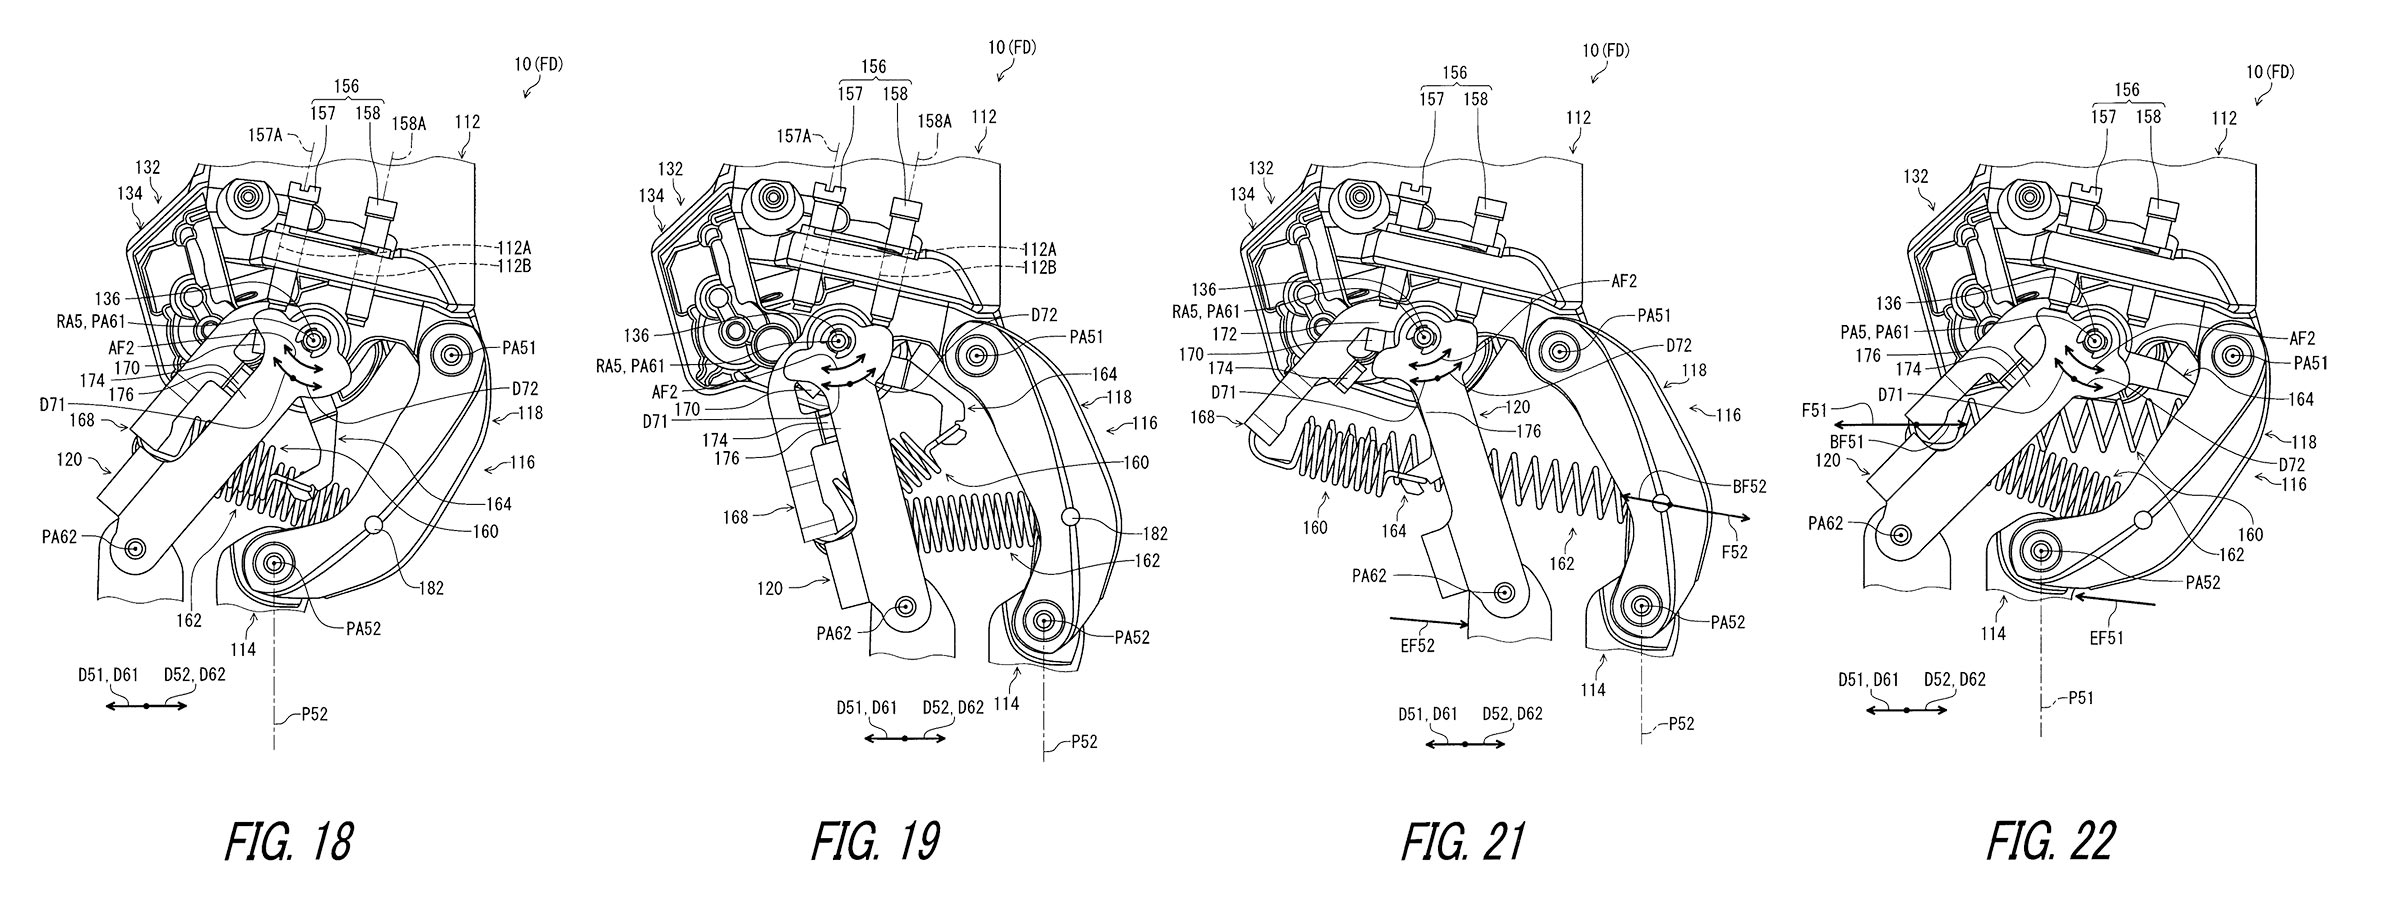 Diagrammi del brevetto Shimano Di2 del deragliatore posteriore flottante resistente agli urti con cambio elettronico